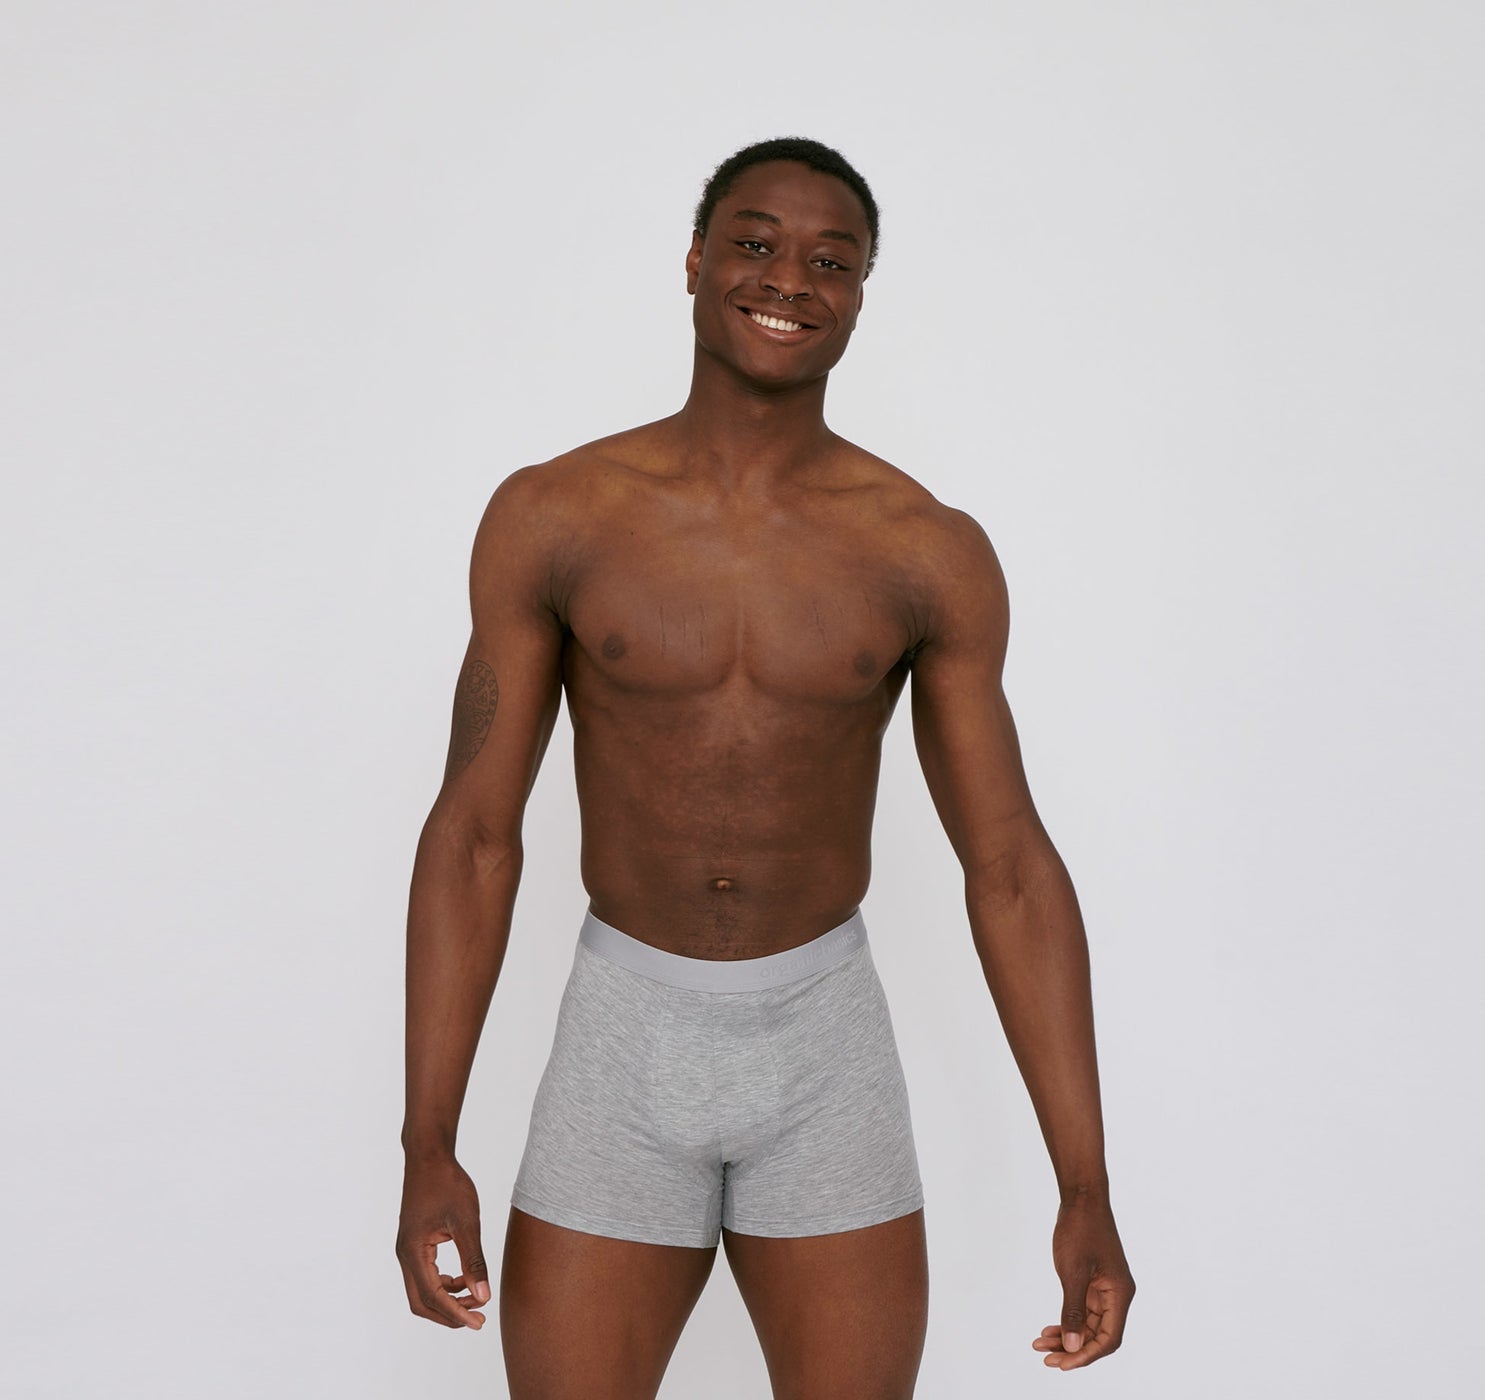 Y.O.U Underwear: We make ethical underwear for men and women